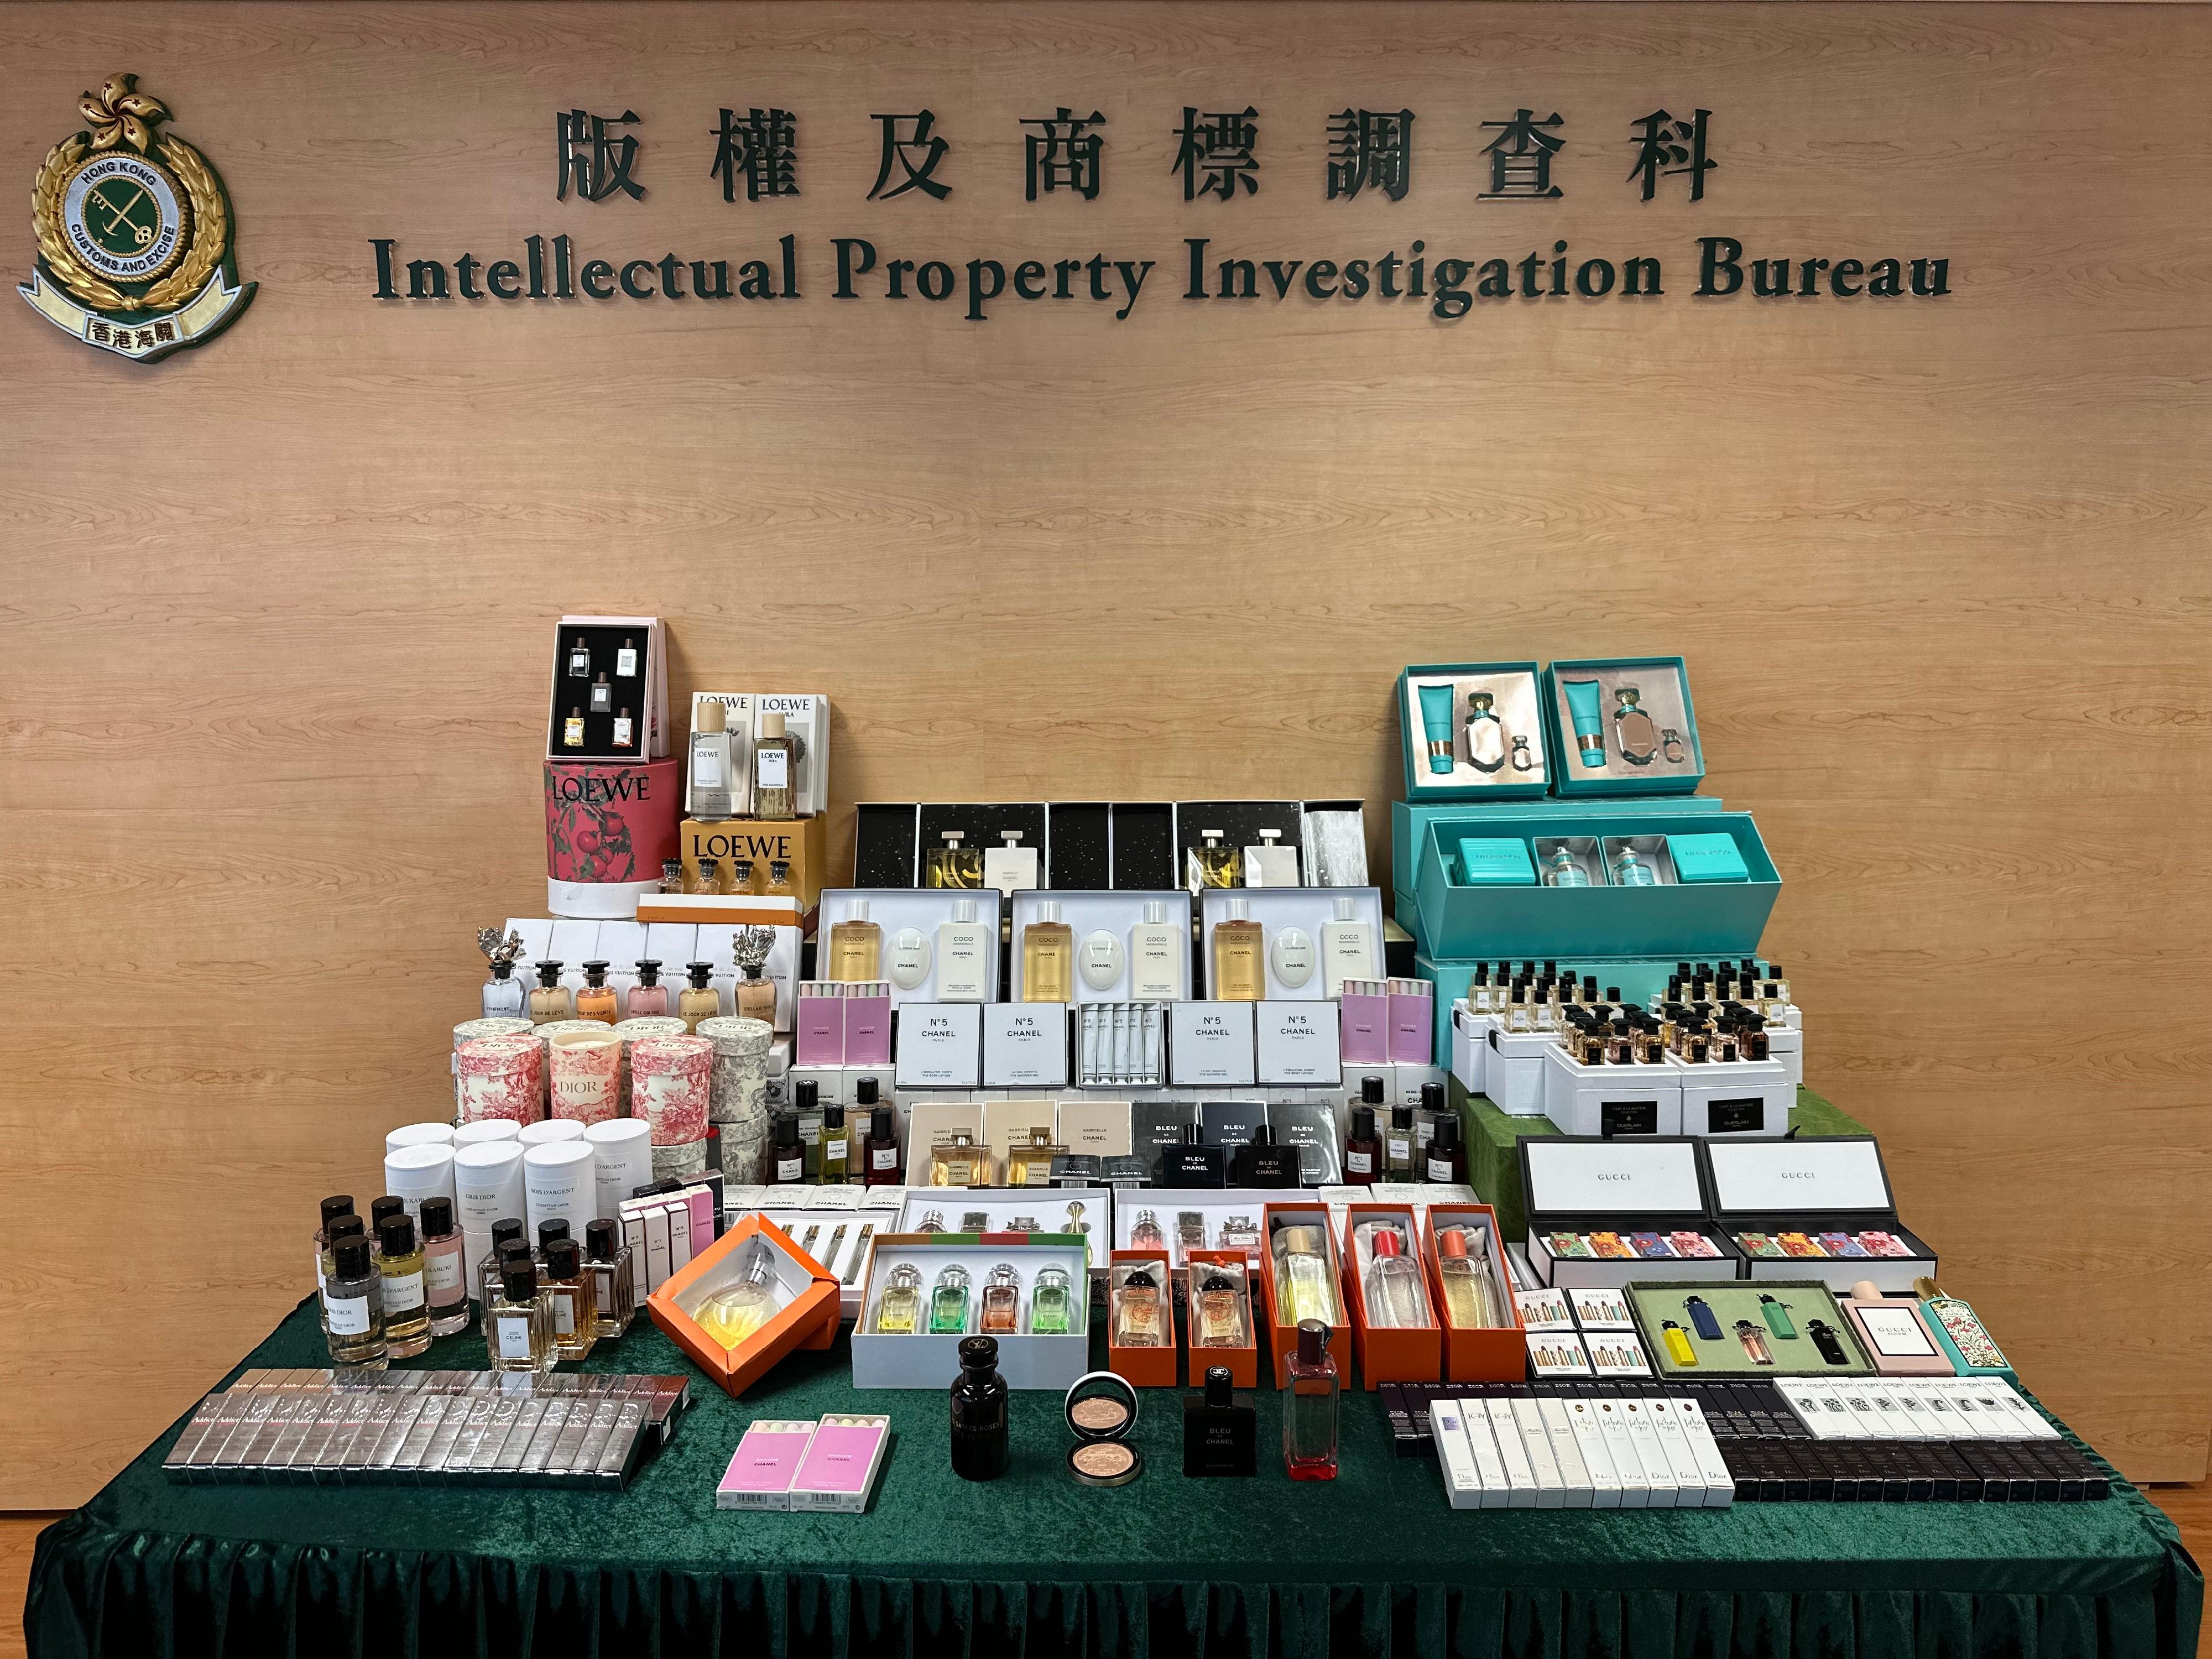 香港海關昨日（六月六日）偵破一宗網上售賣冒牌香水和化妝品的案件，檢獲約一千五百件懷疑冒牌產品，估計市值約六十八萬元。圖示部分檢獲的懷疑冒牌產品。